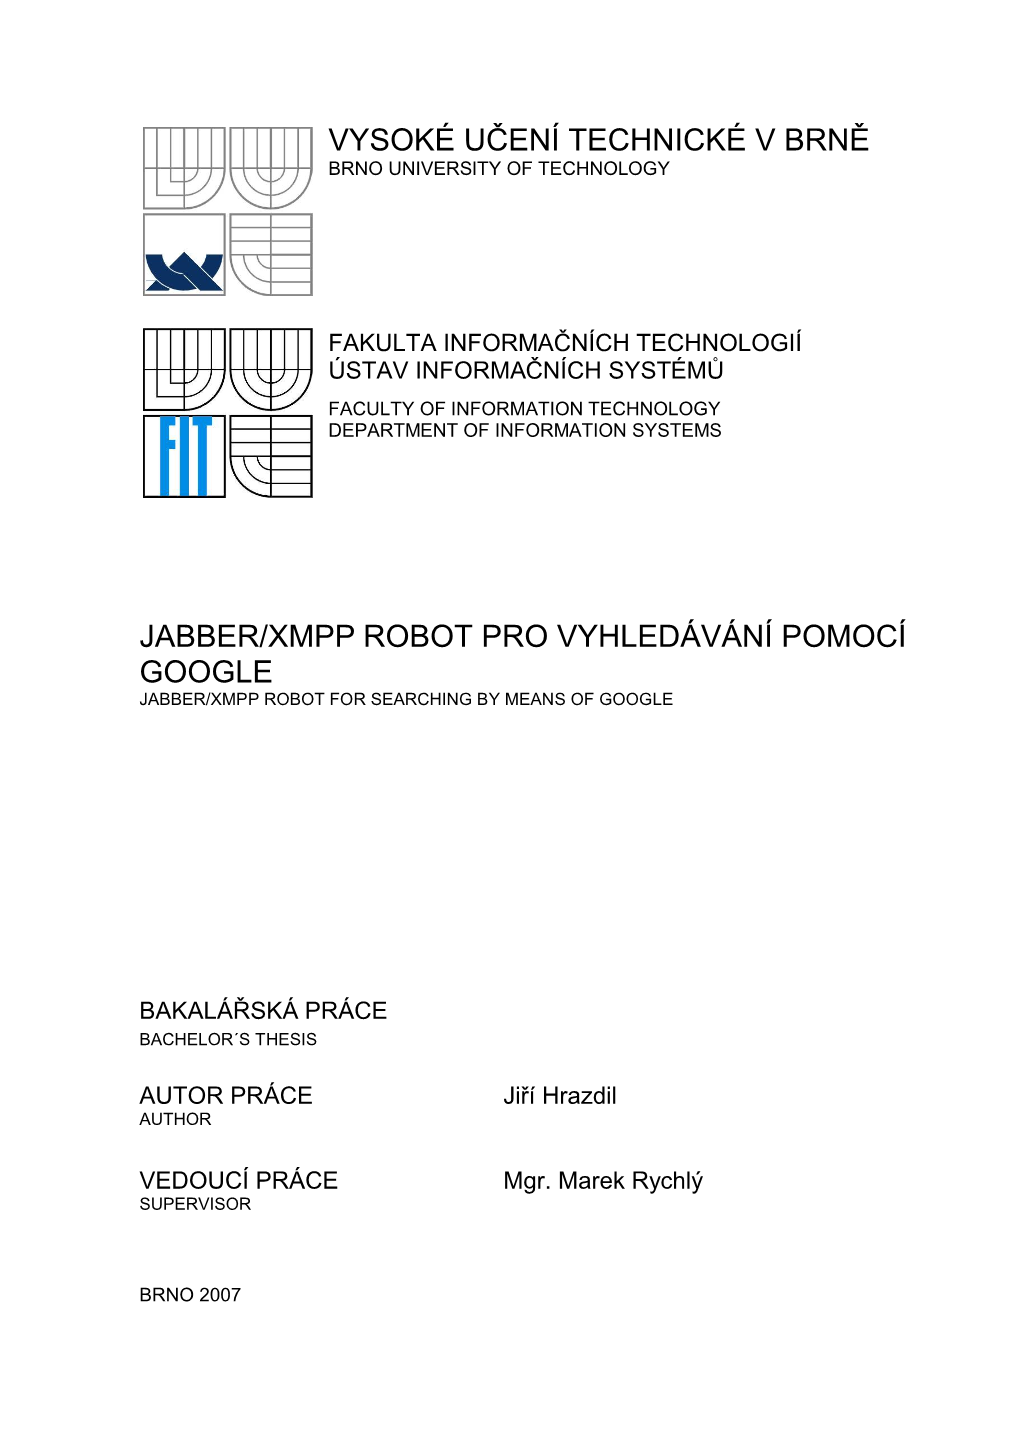 Jabber/Xmpp Robot Pro Vyhledávání Pomocí Google Jabber/Xmpp Robot for Searching by Means of Google